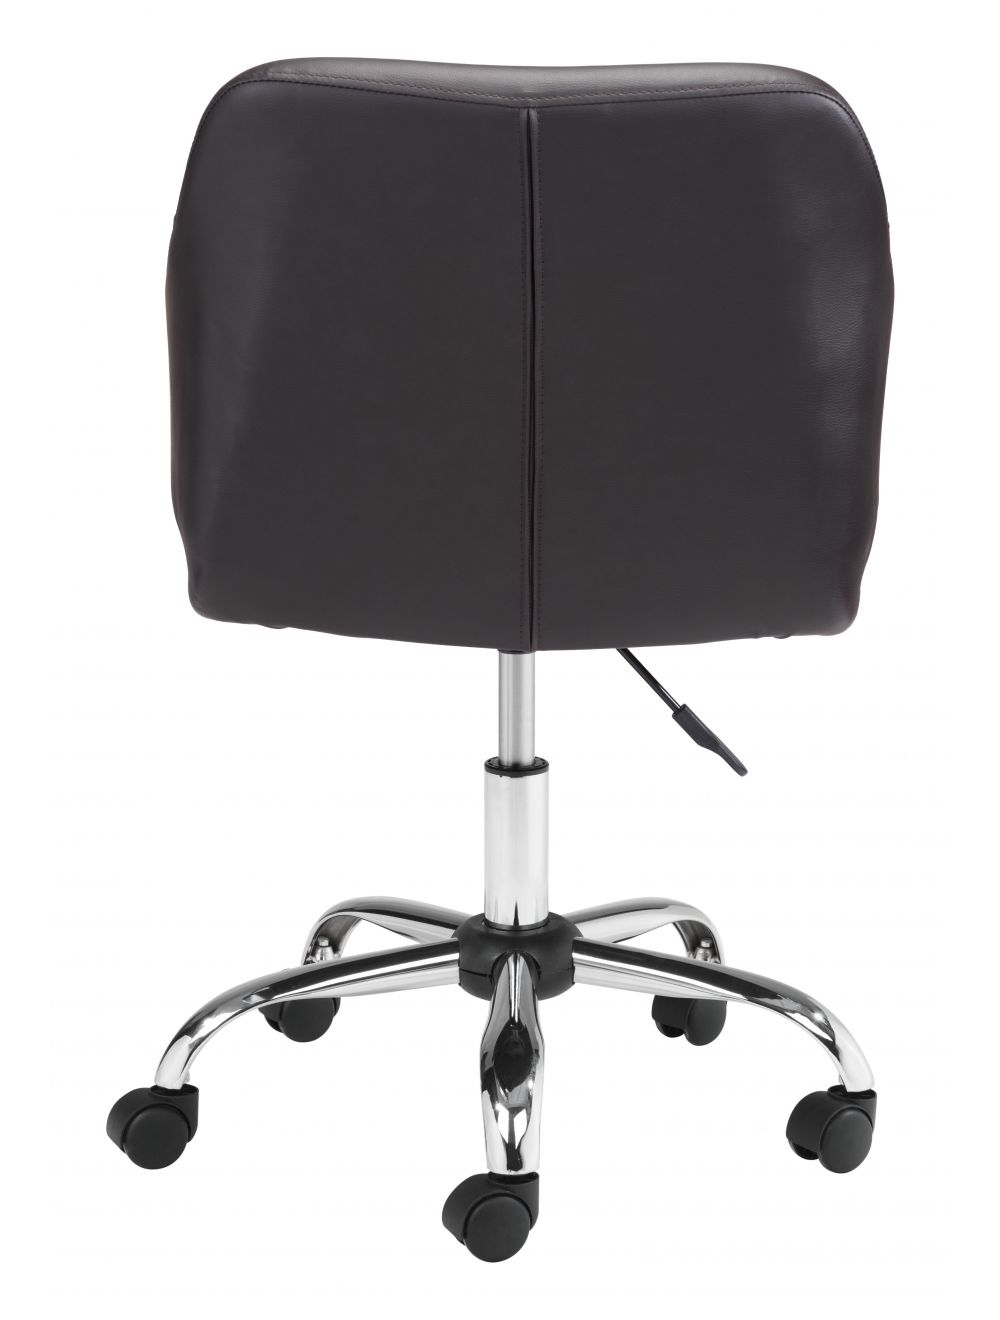 Designer Office Chair Brown & Walnut